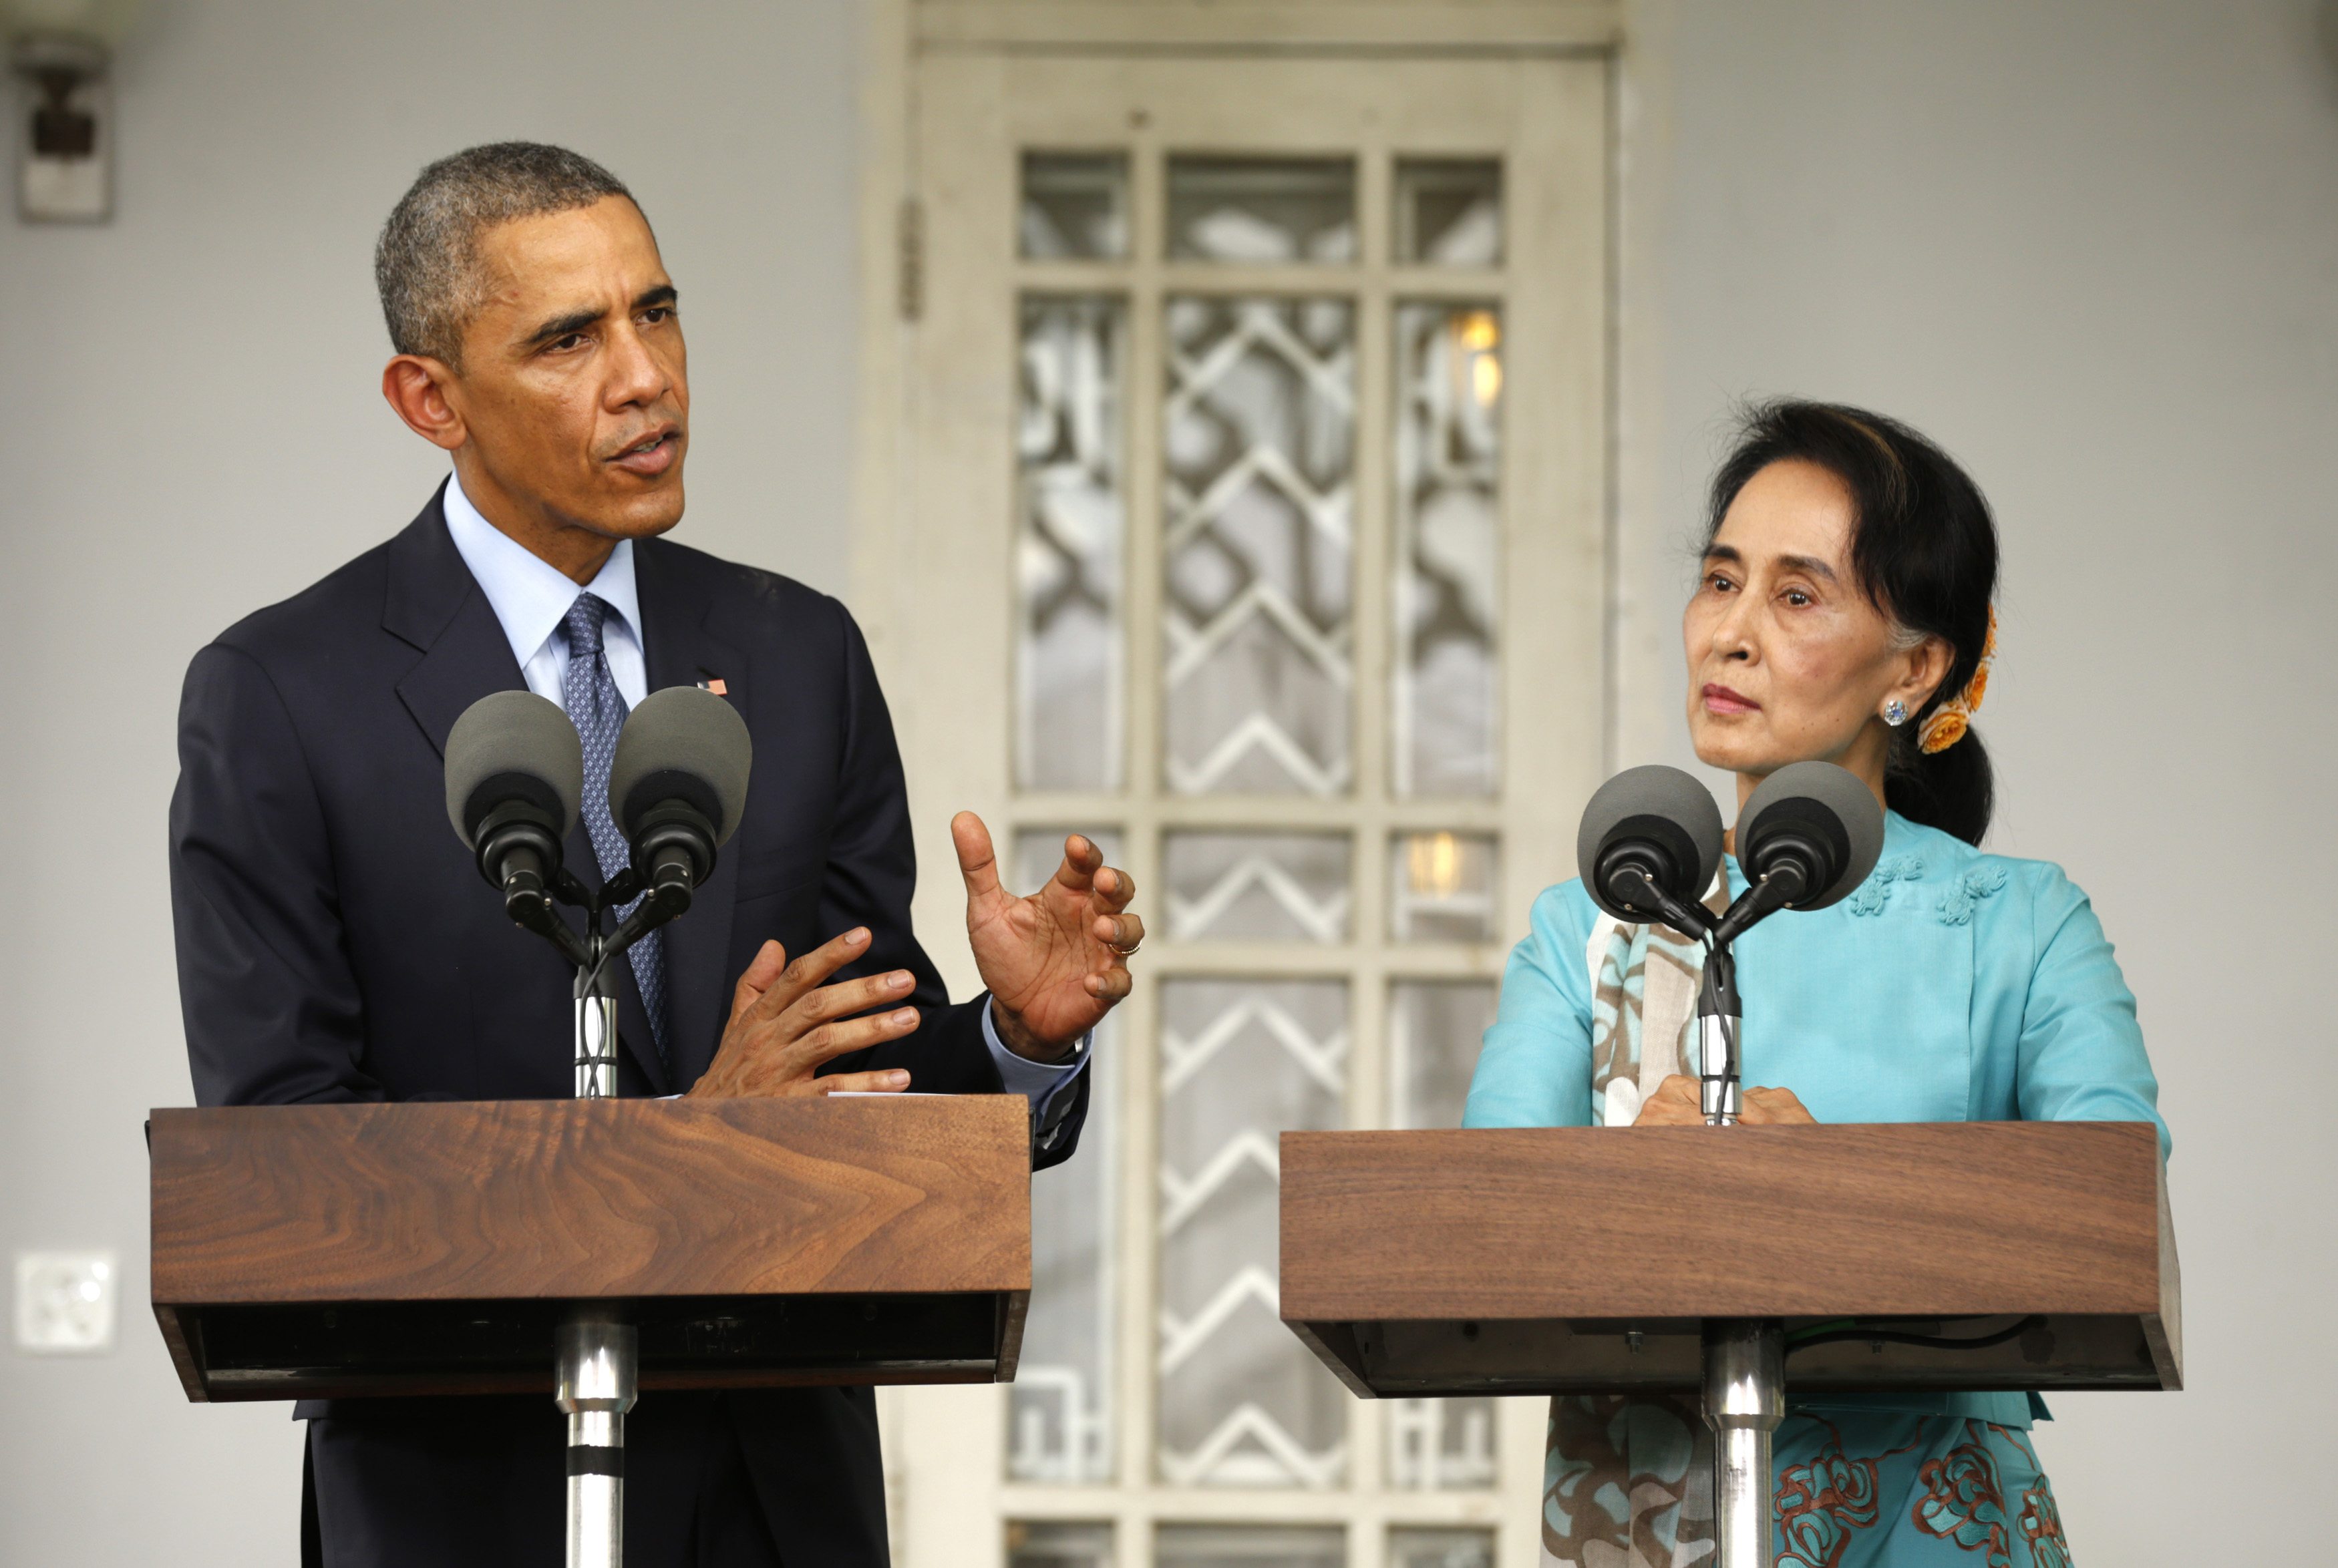 Ομπάμα: Πρέπει να γίνουν ελεύθερες και δίκαιες εκλογές στη Μιανμάρ